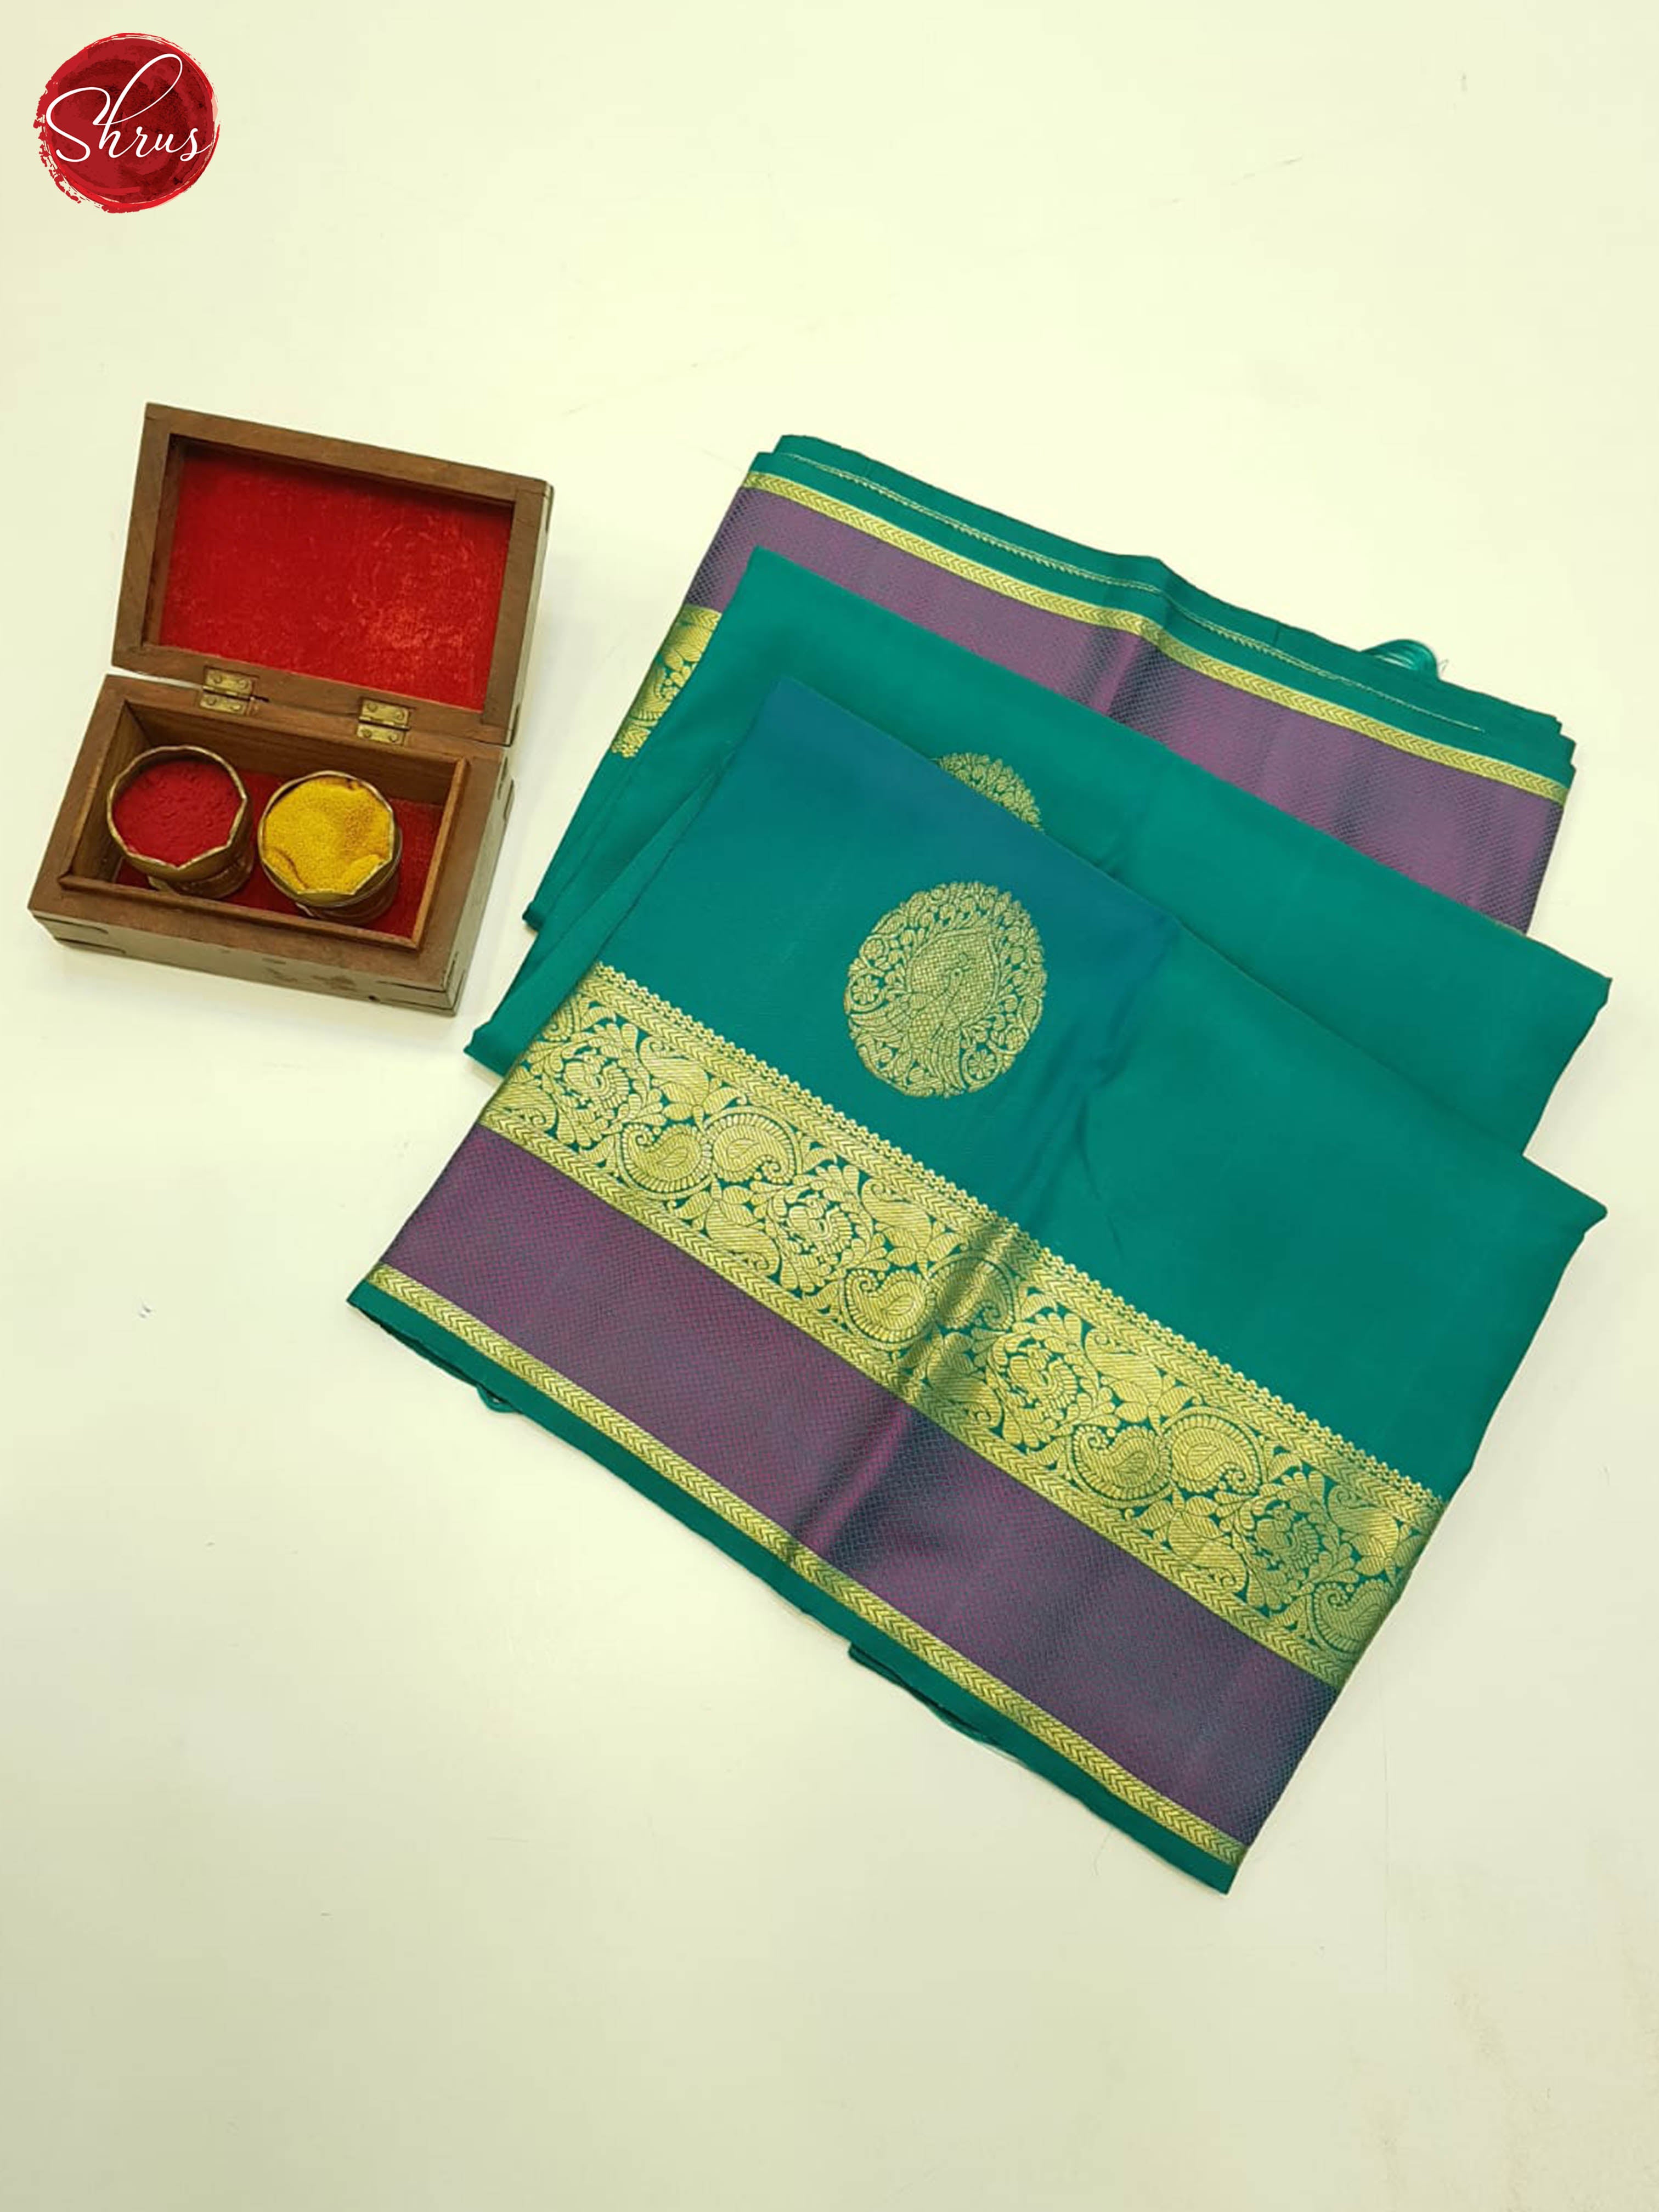 Teal Green & Purple - Kanchipuram Silk - Shop on ShrusEternity.com